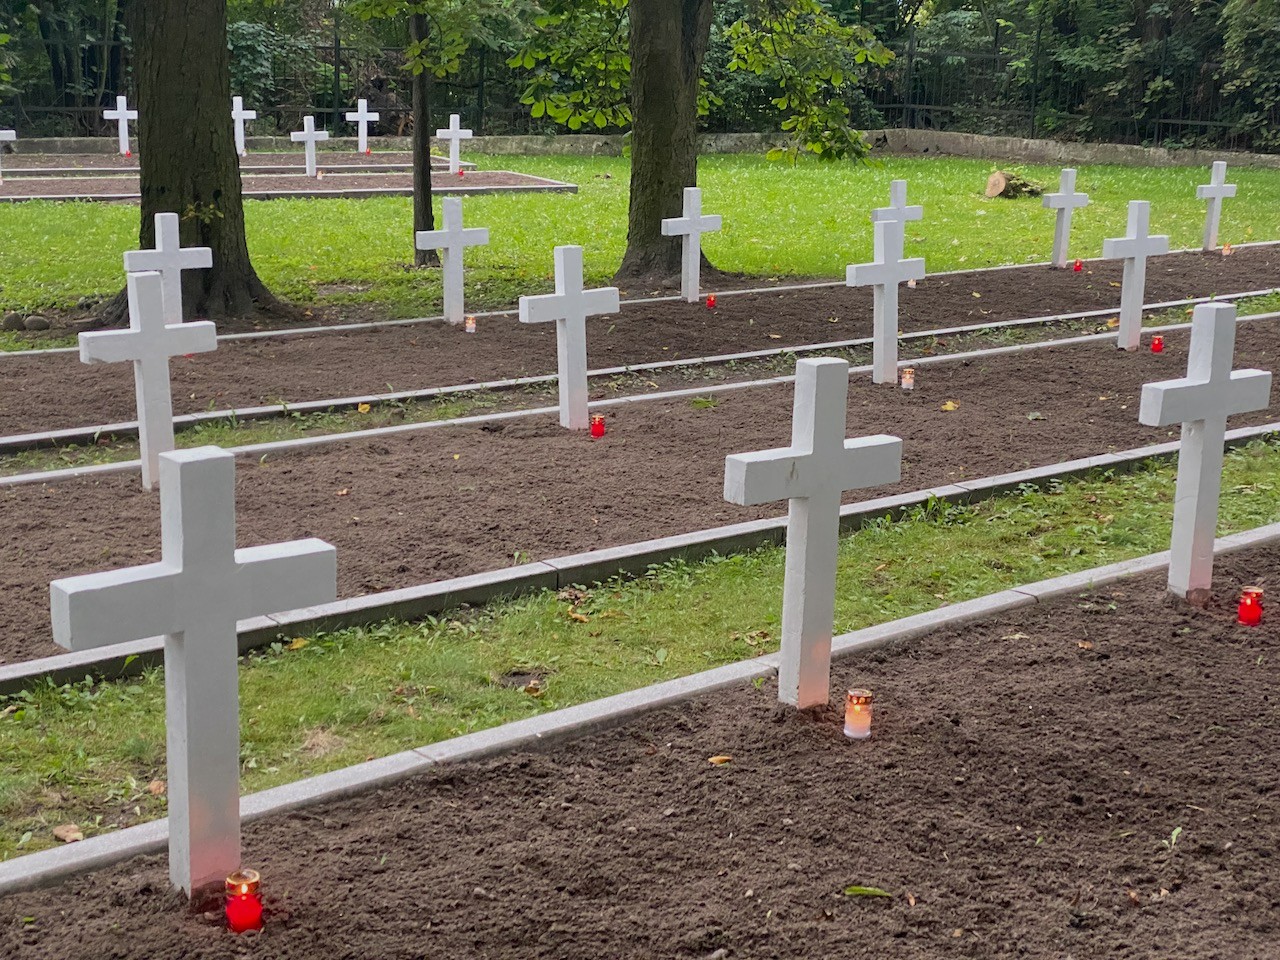 Cmentarz z białymi krzyżami bez oznaczeń. Pod każdym krzyżem stoi pojedynczy zapalony znicz